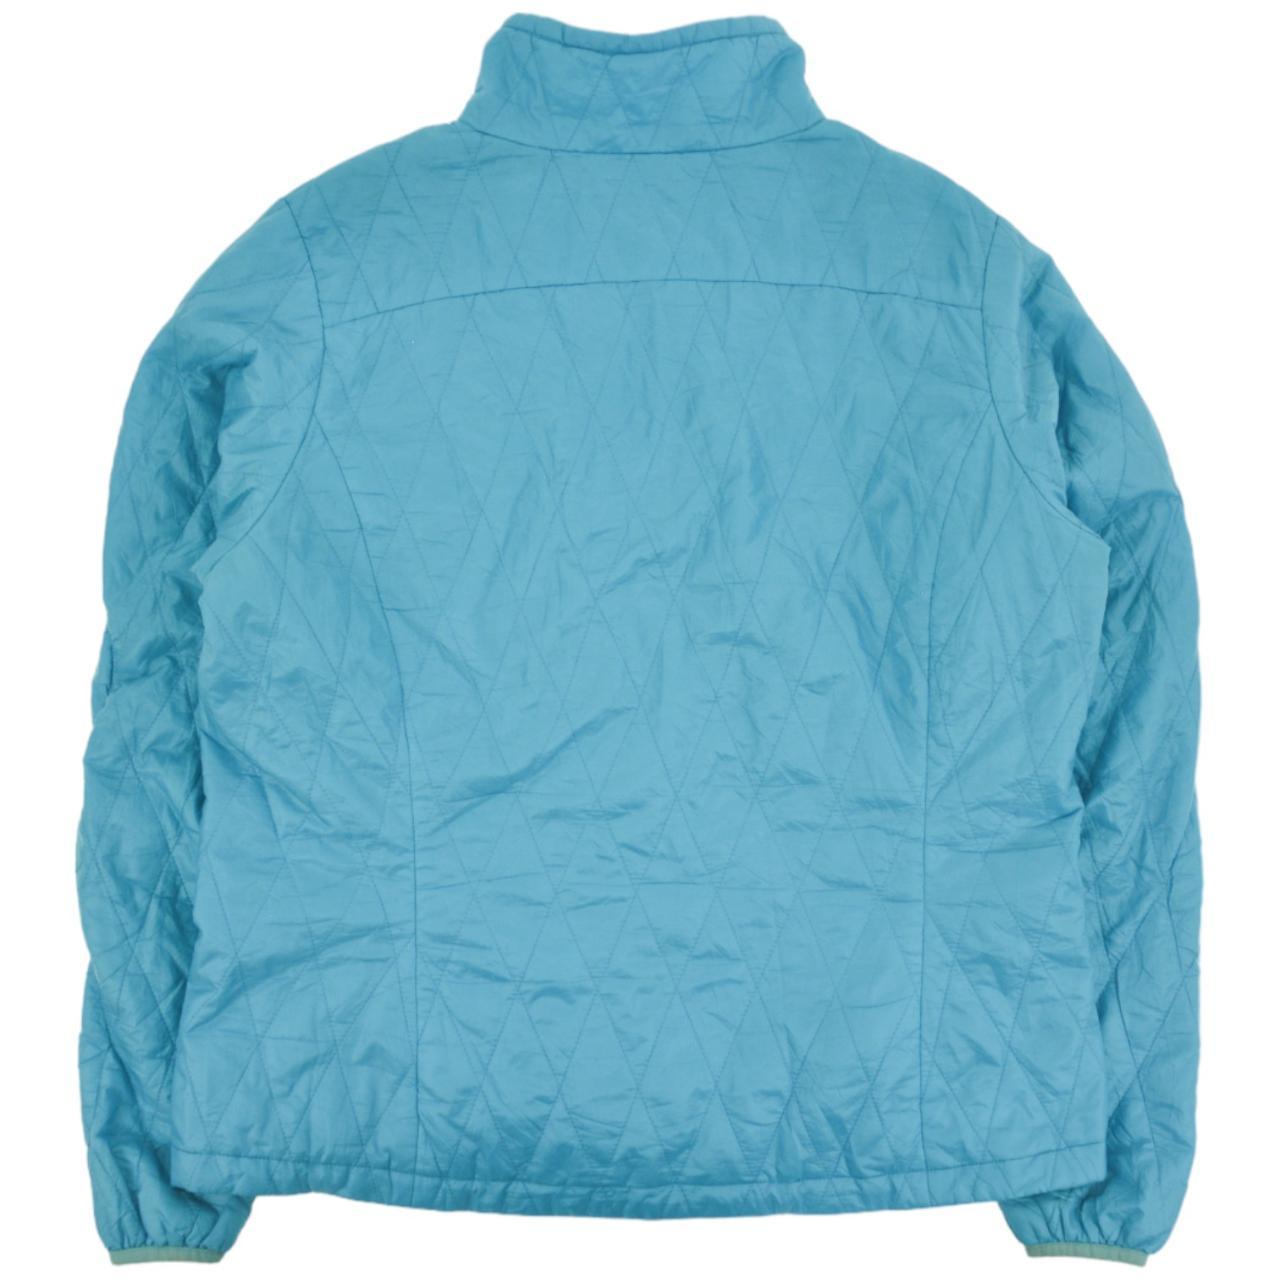 Vintage Patagonia Zip Up Jacket Women's Size XL